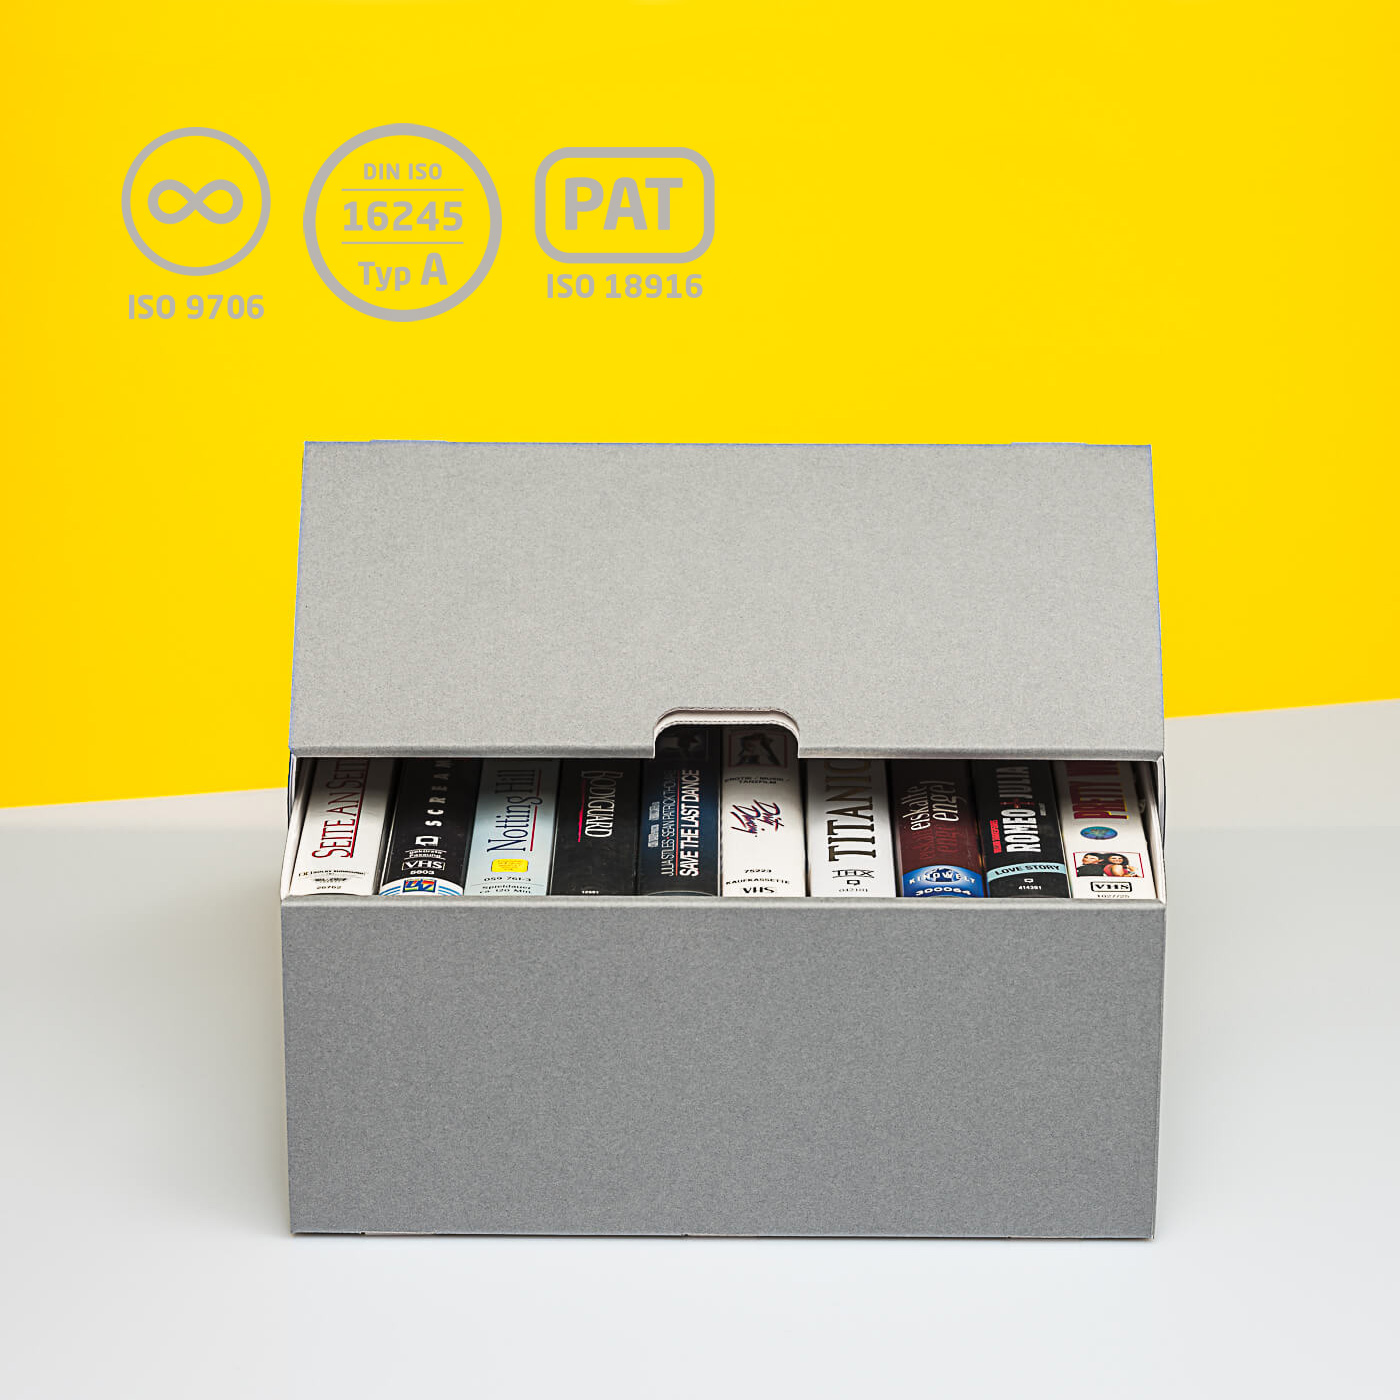 Archivbox für VHS Kassetten